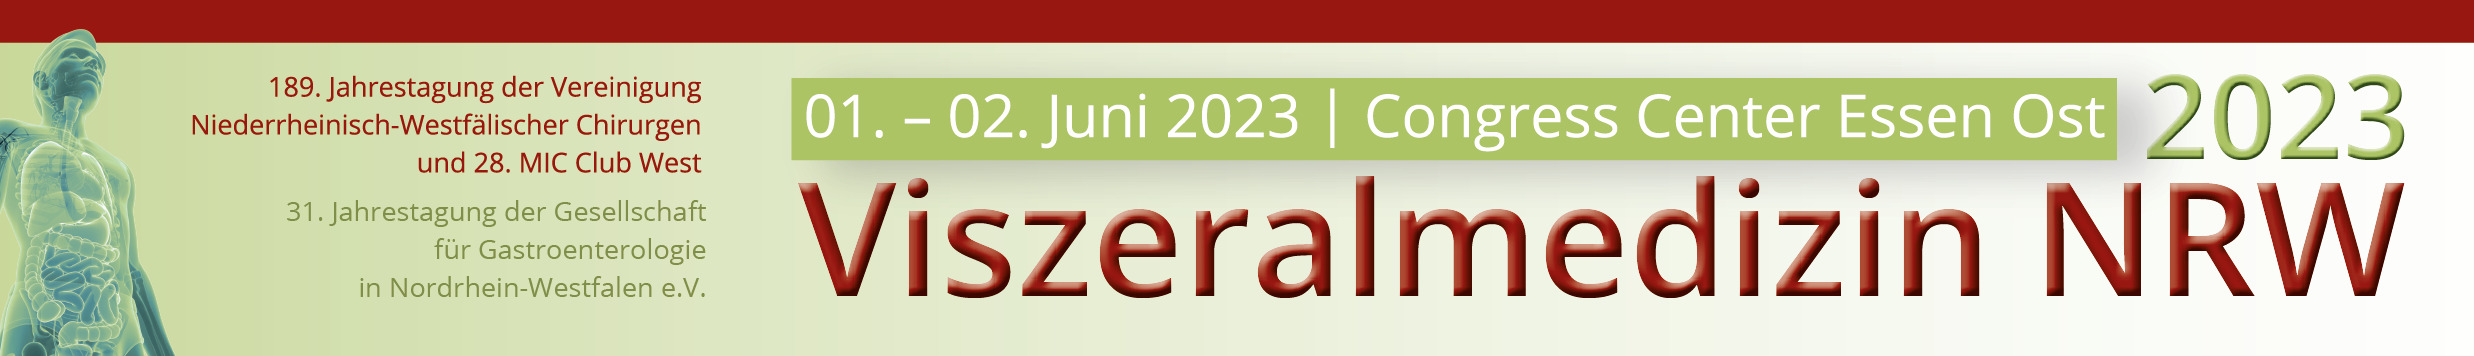 Visit BioCer at Viszeralmedizin NRW 2023 in Essen.